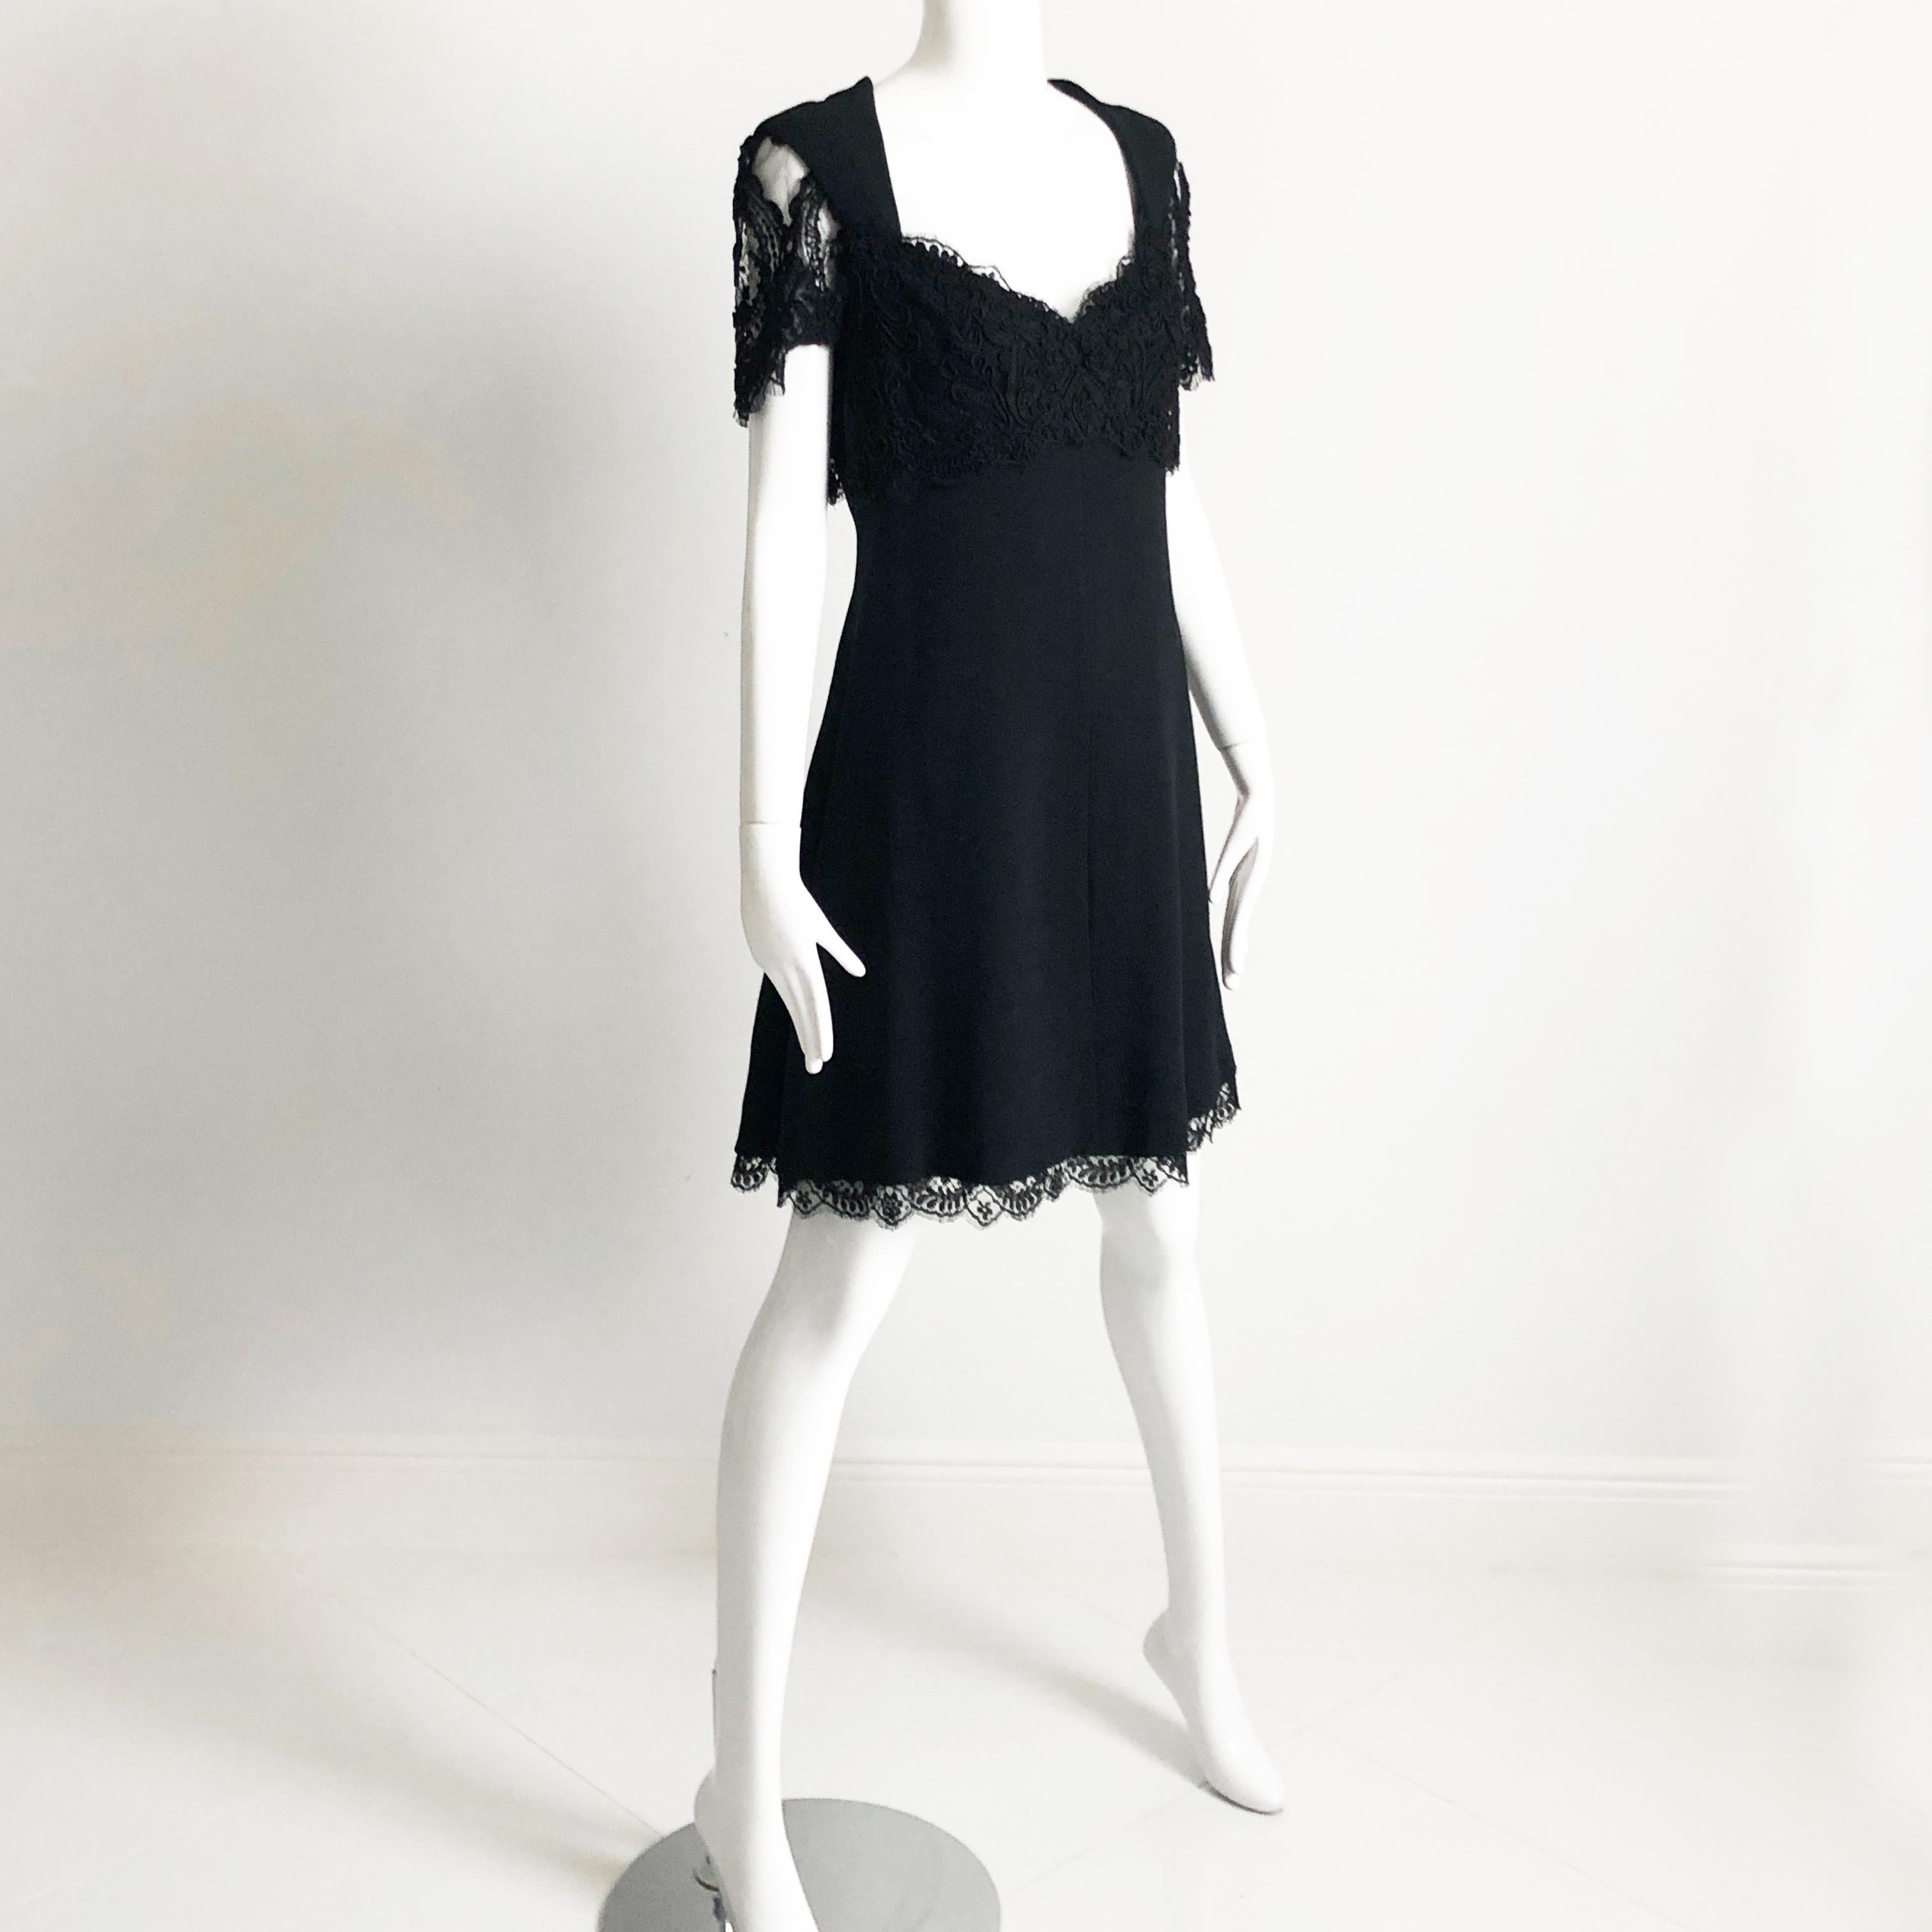 Petite robe noire vintage d'occasion, conçue par Louis Feraud, probablement à la fin des années 80 ou au début des années 90.  Réalisé en tissu noir, il présente un magnifique panneau de dentelle festonné sur le devant de la poitrine et dans le dos,